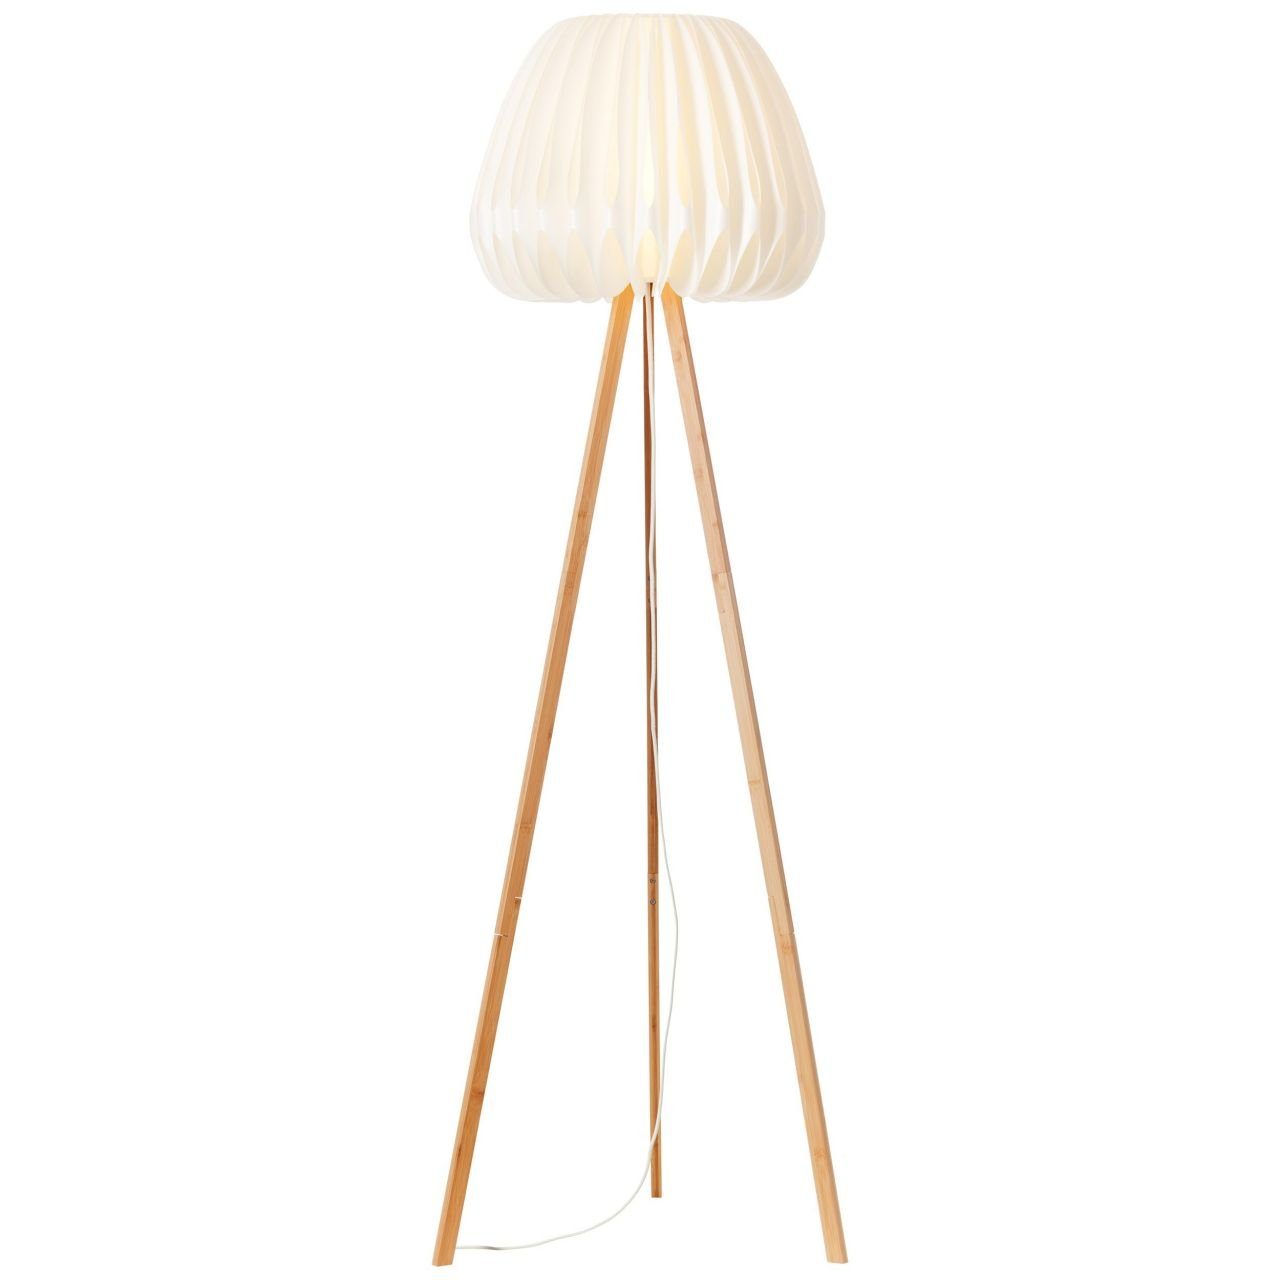 Stehlampe Lampe, Inna, Bambus/Kunststoff holz dreibeinig Inna Brilliant Standleuchte, hell/weiß,